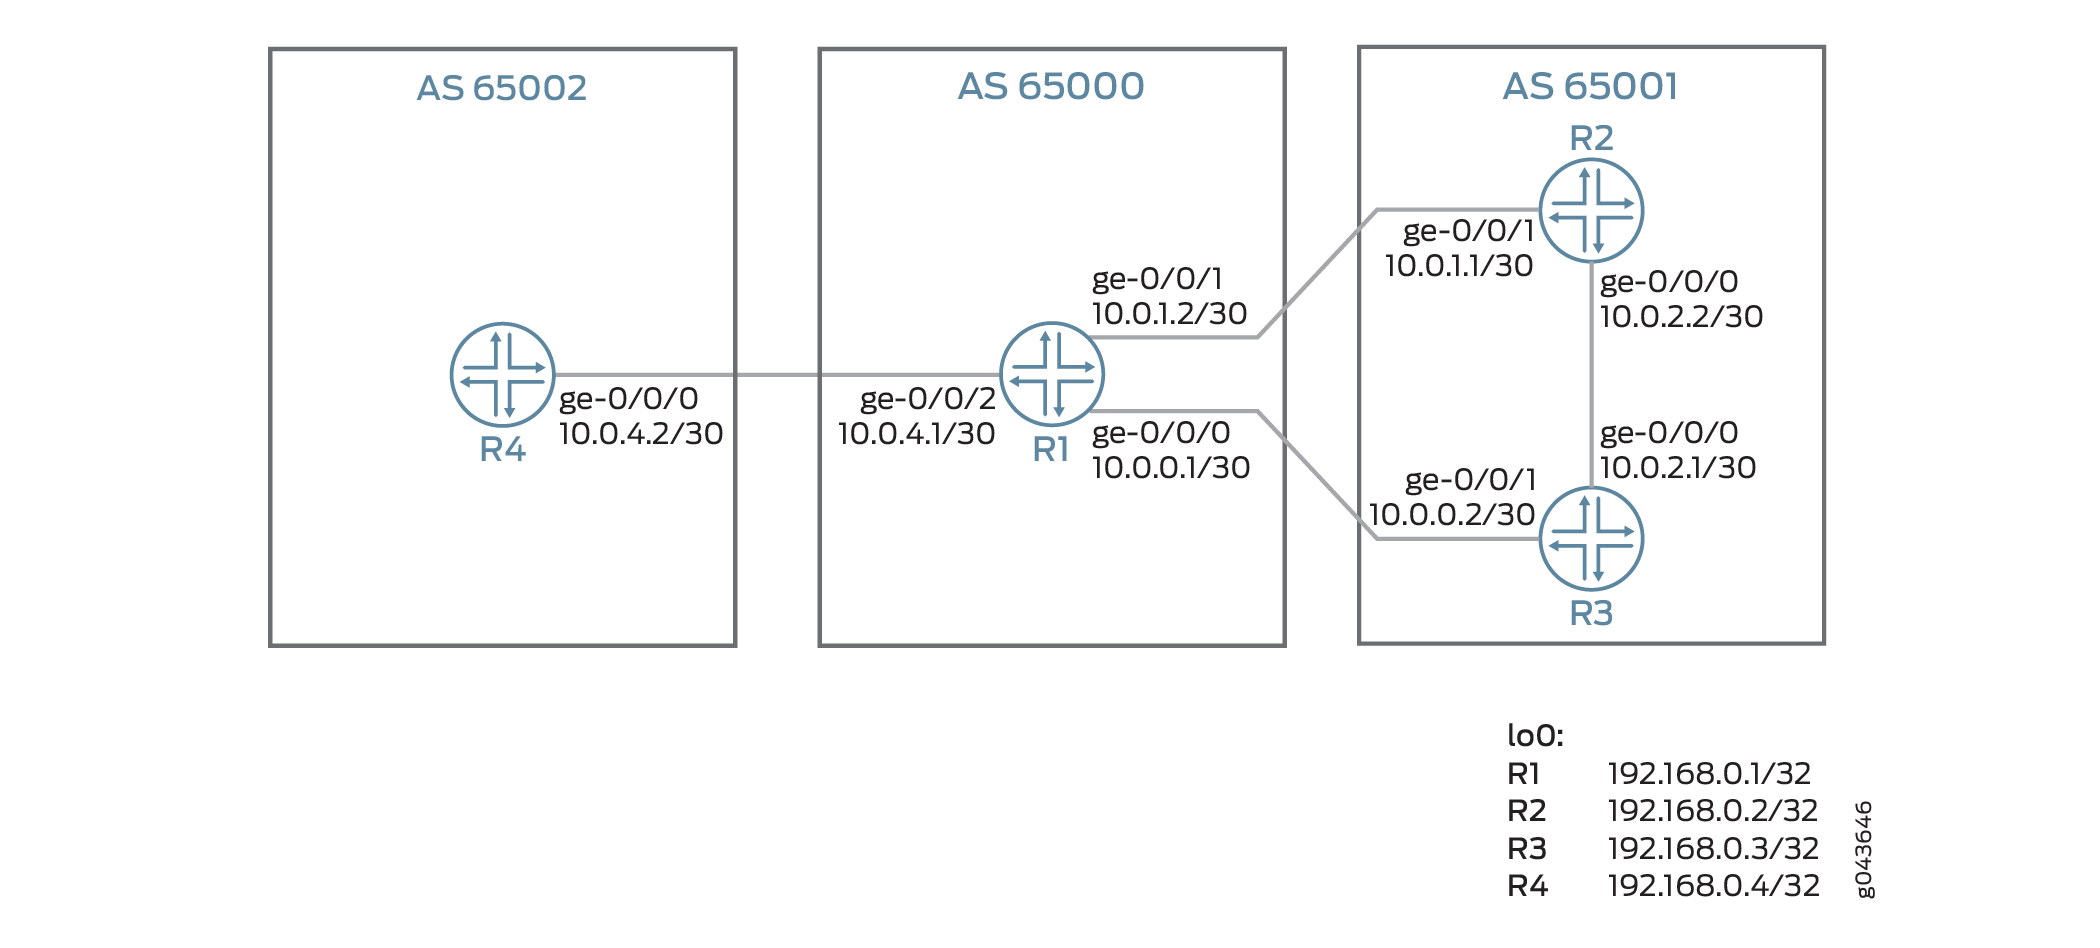 負荷分散のために外部 BGP リンクに集合帯域幅を広告するポリシーの設定